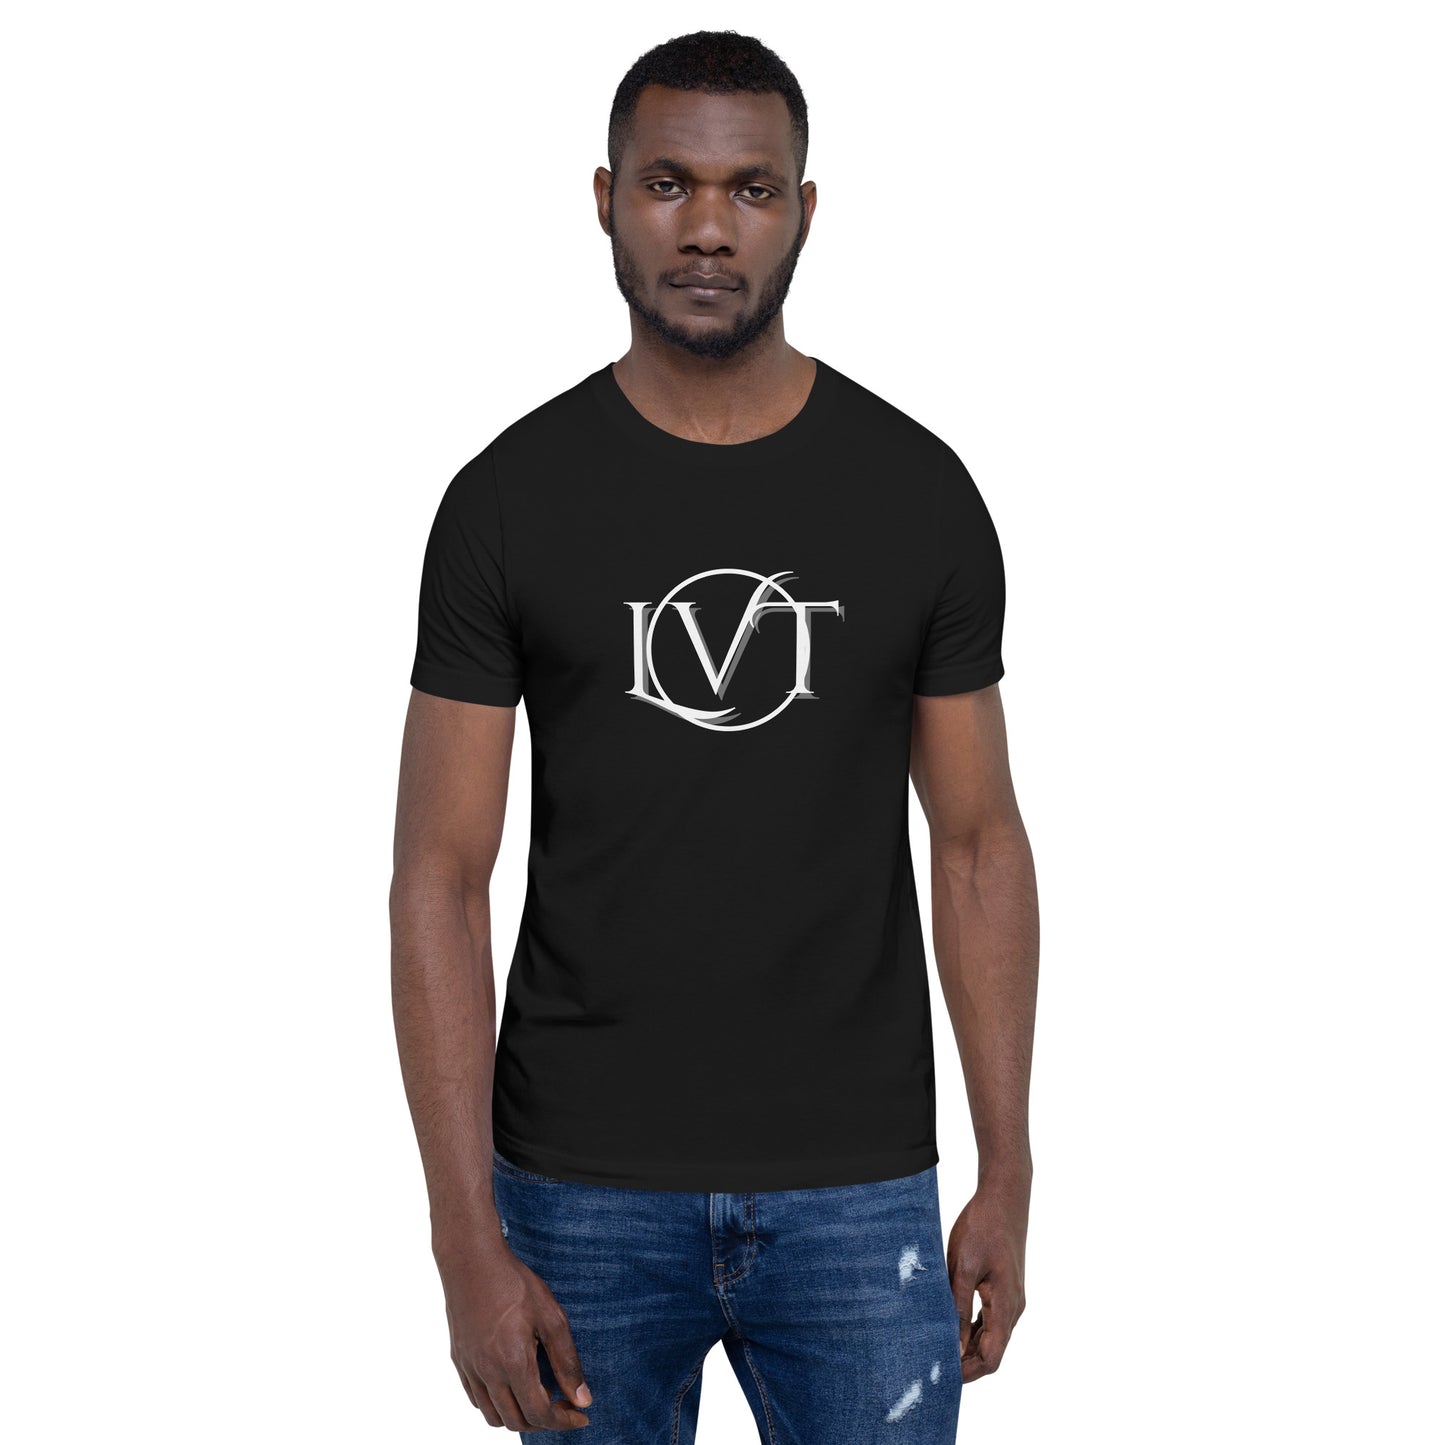 LVT Black and White Logo T-Shirt